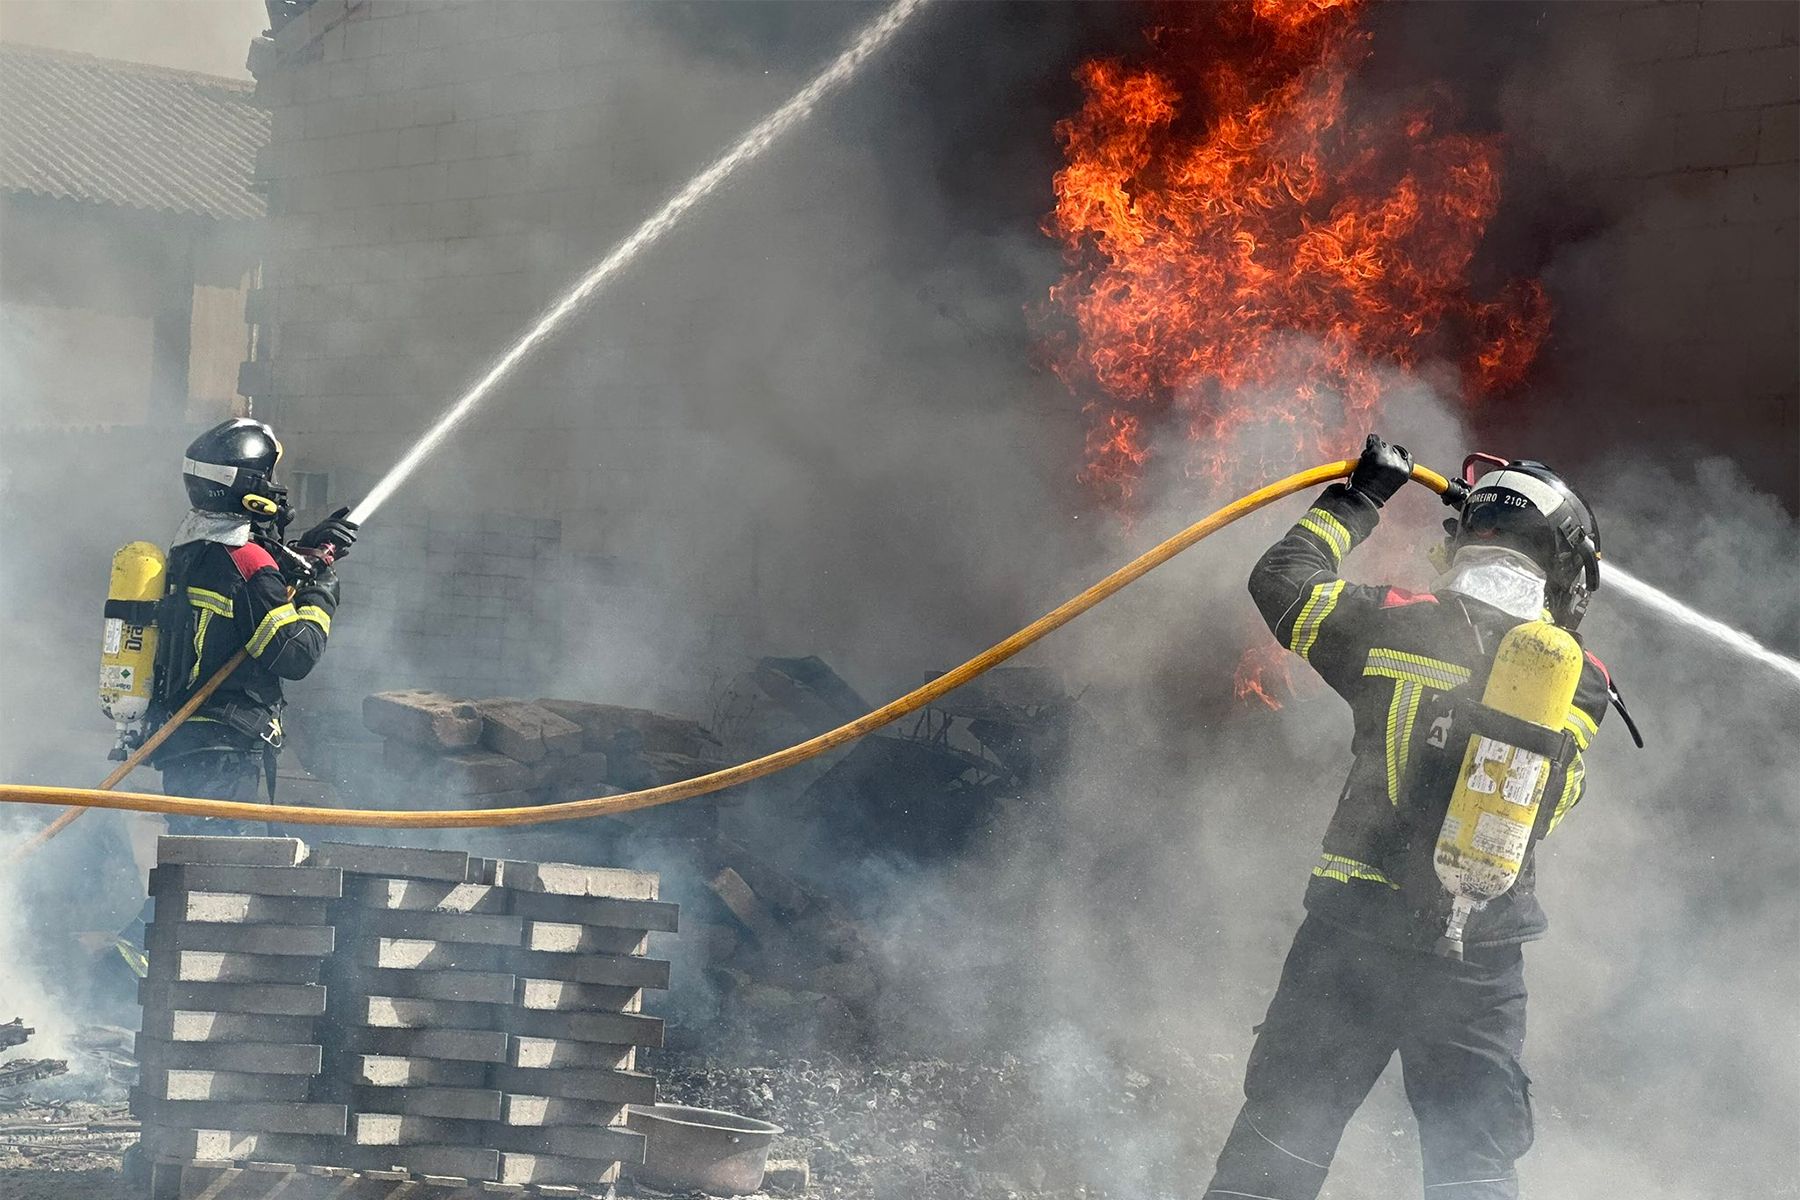 Intervención de los Bomberos de León en el incendio declarado en una nave de Santa Olaja de la Ribera. Bomberos León